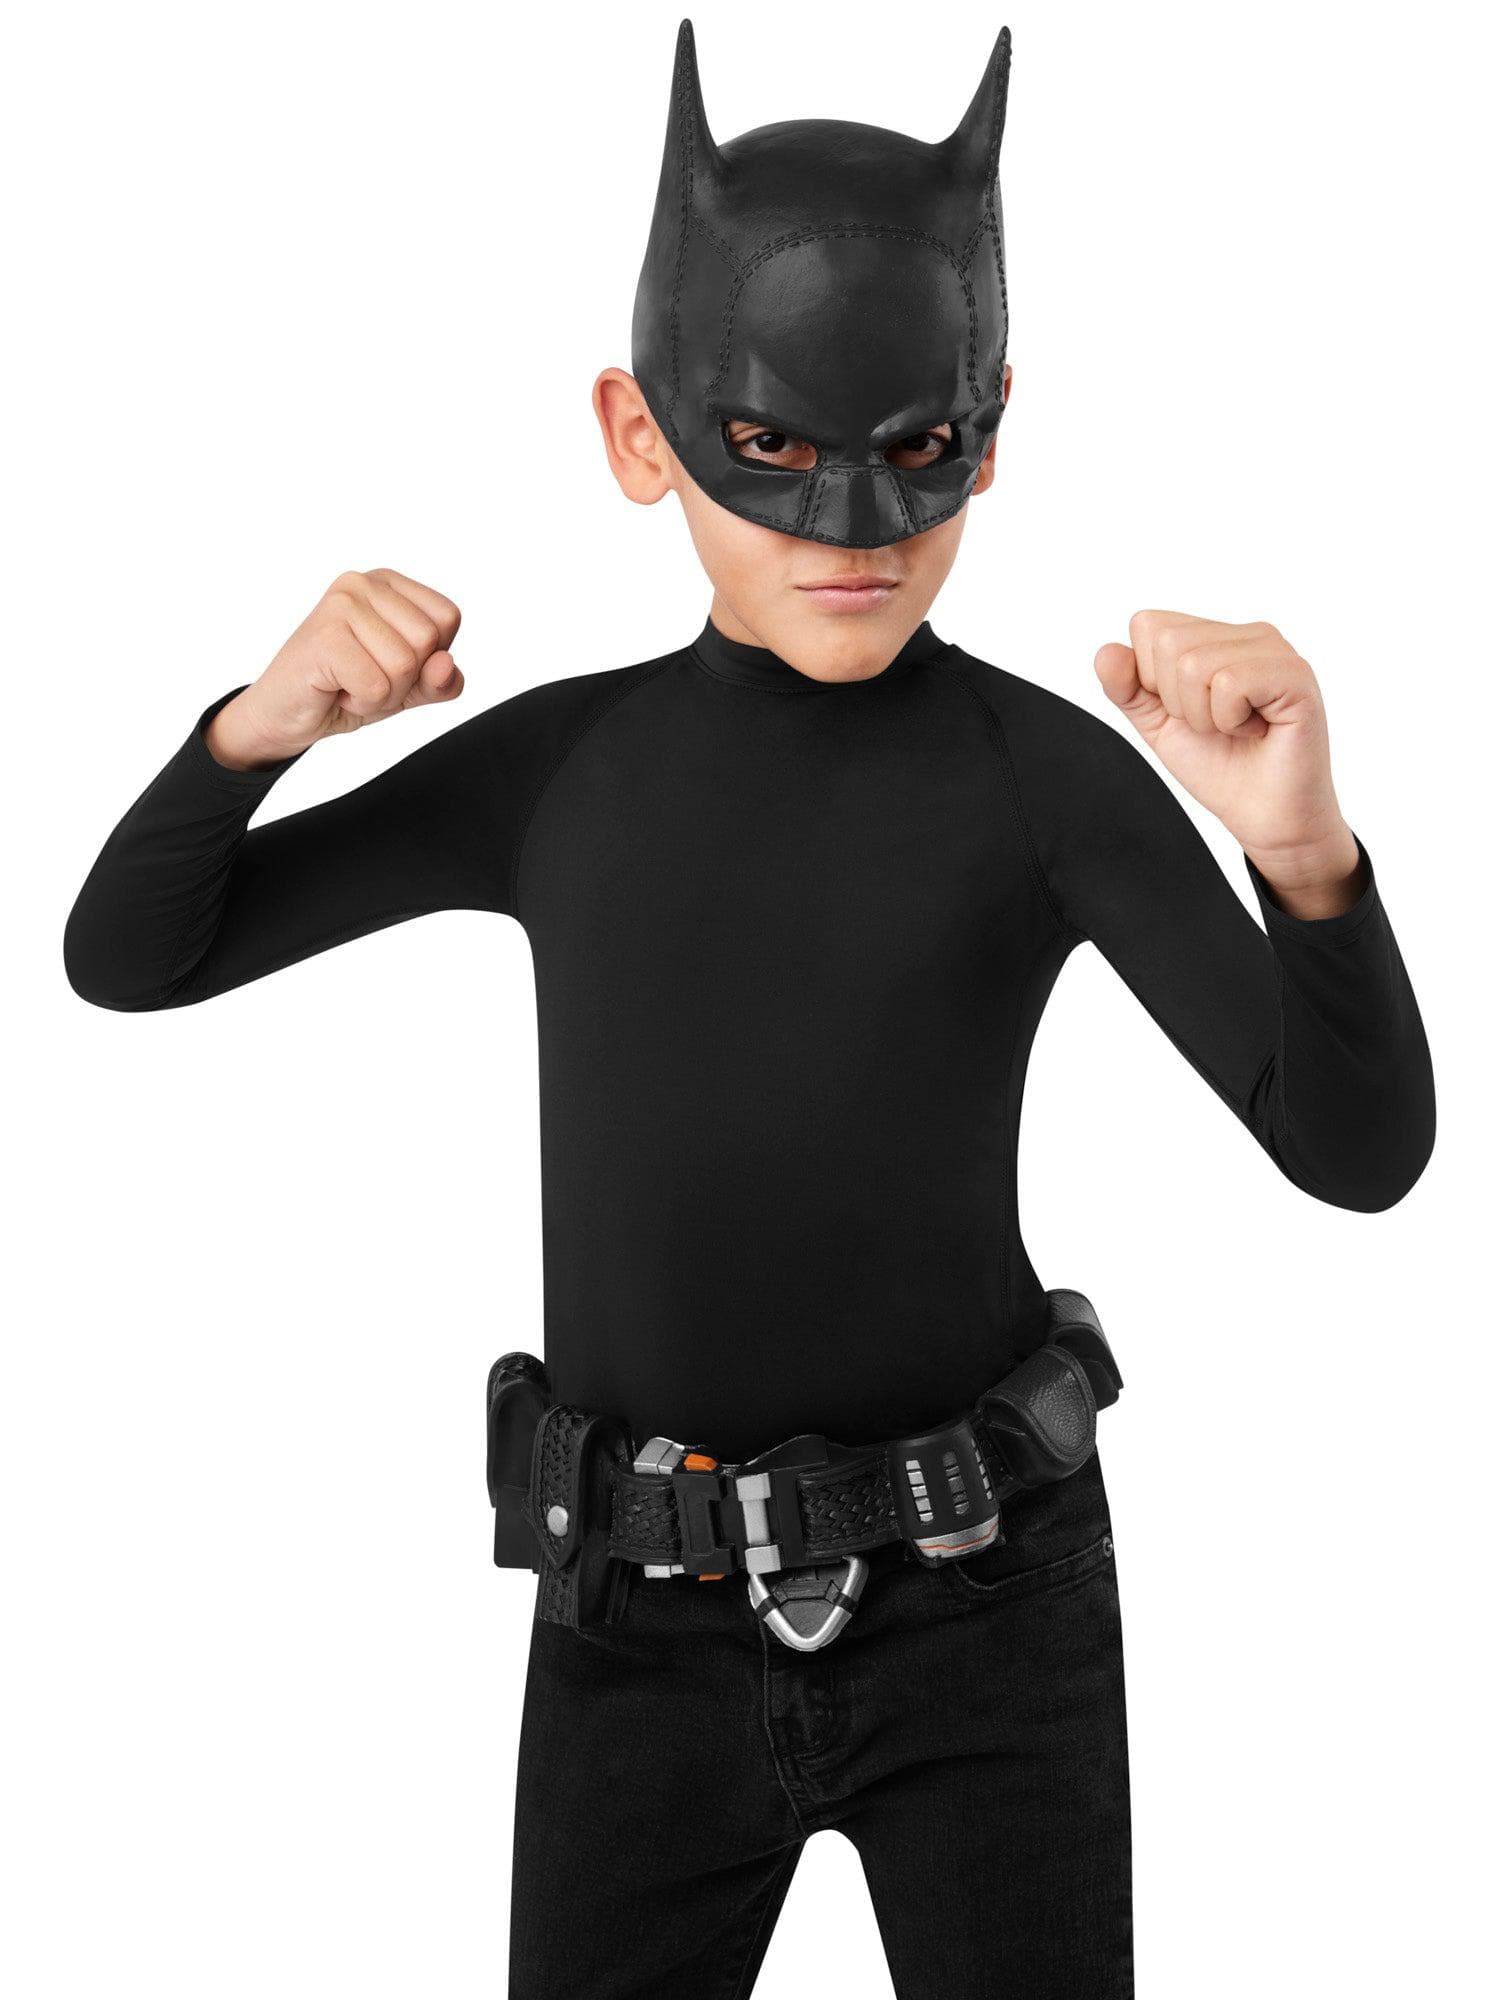 Kids' The Batman Utility Belt - costumes.com